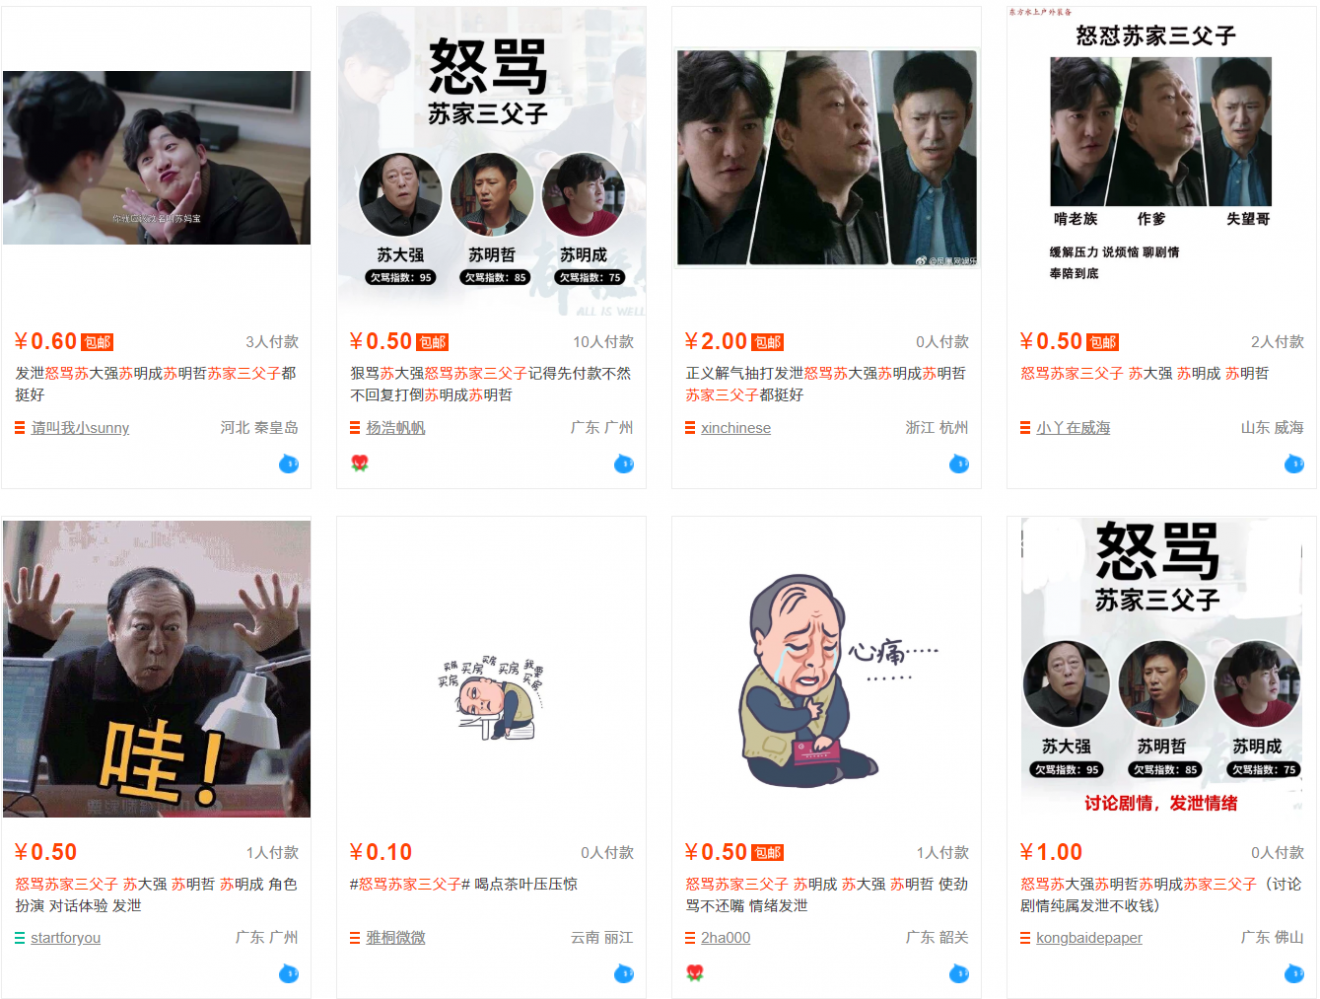 5 thứ của lạ đang bán đầy rẫy trên Internet ở Trung Quốc, chưa nơi nào dám bắt chước được hết-2